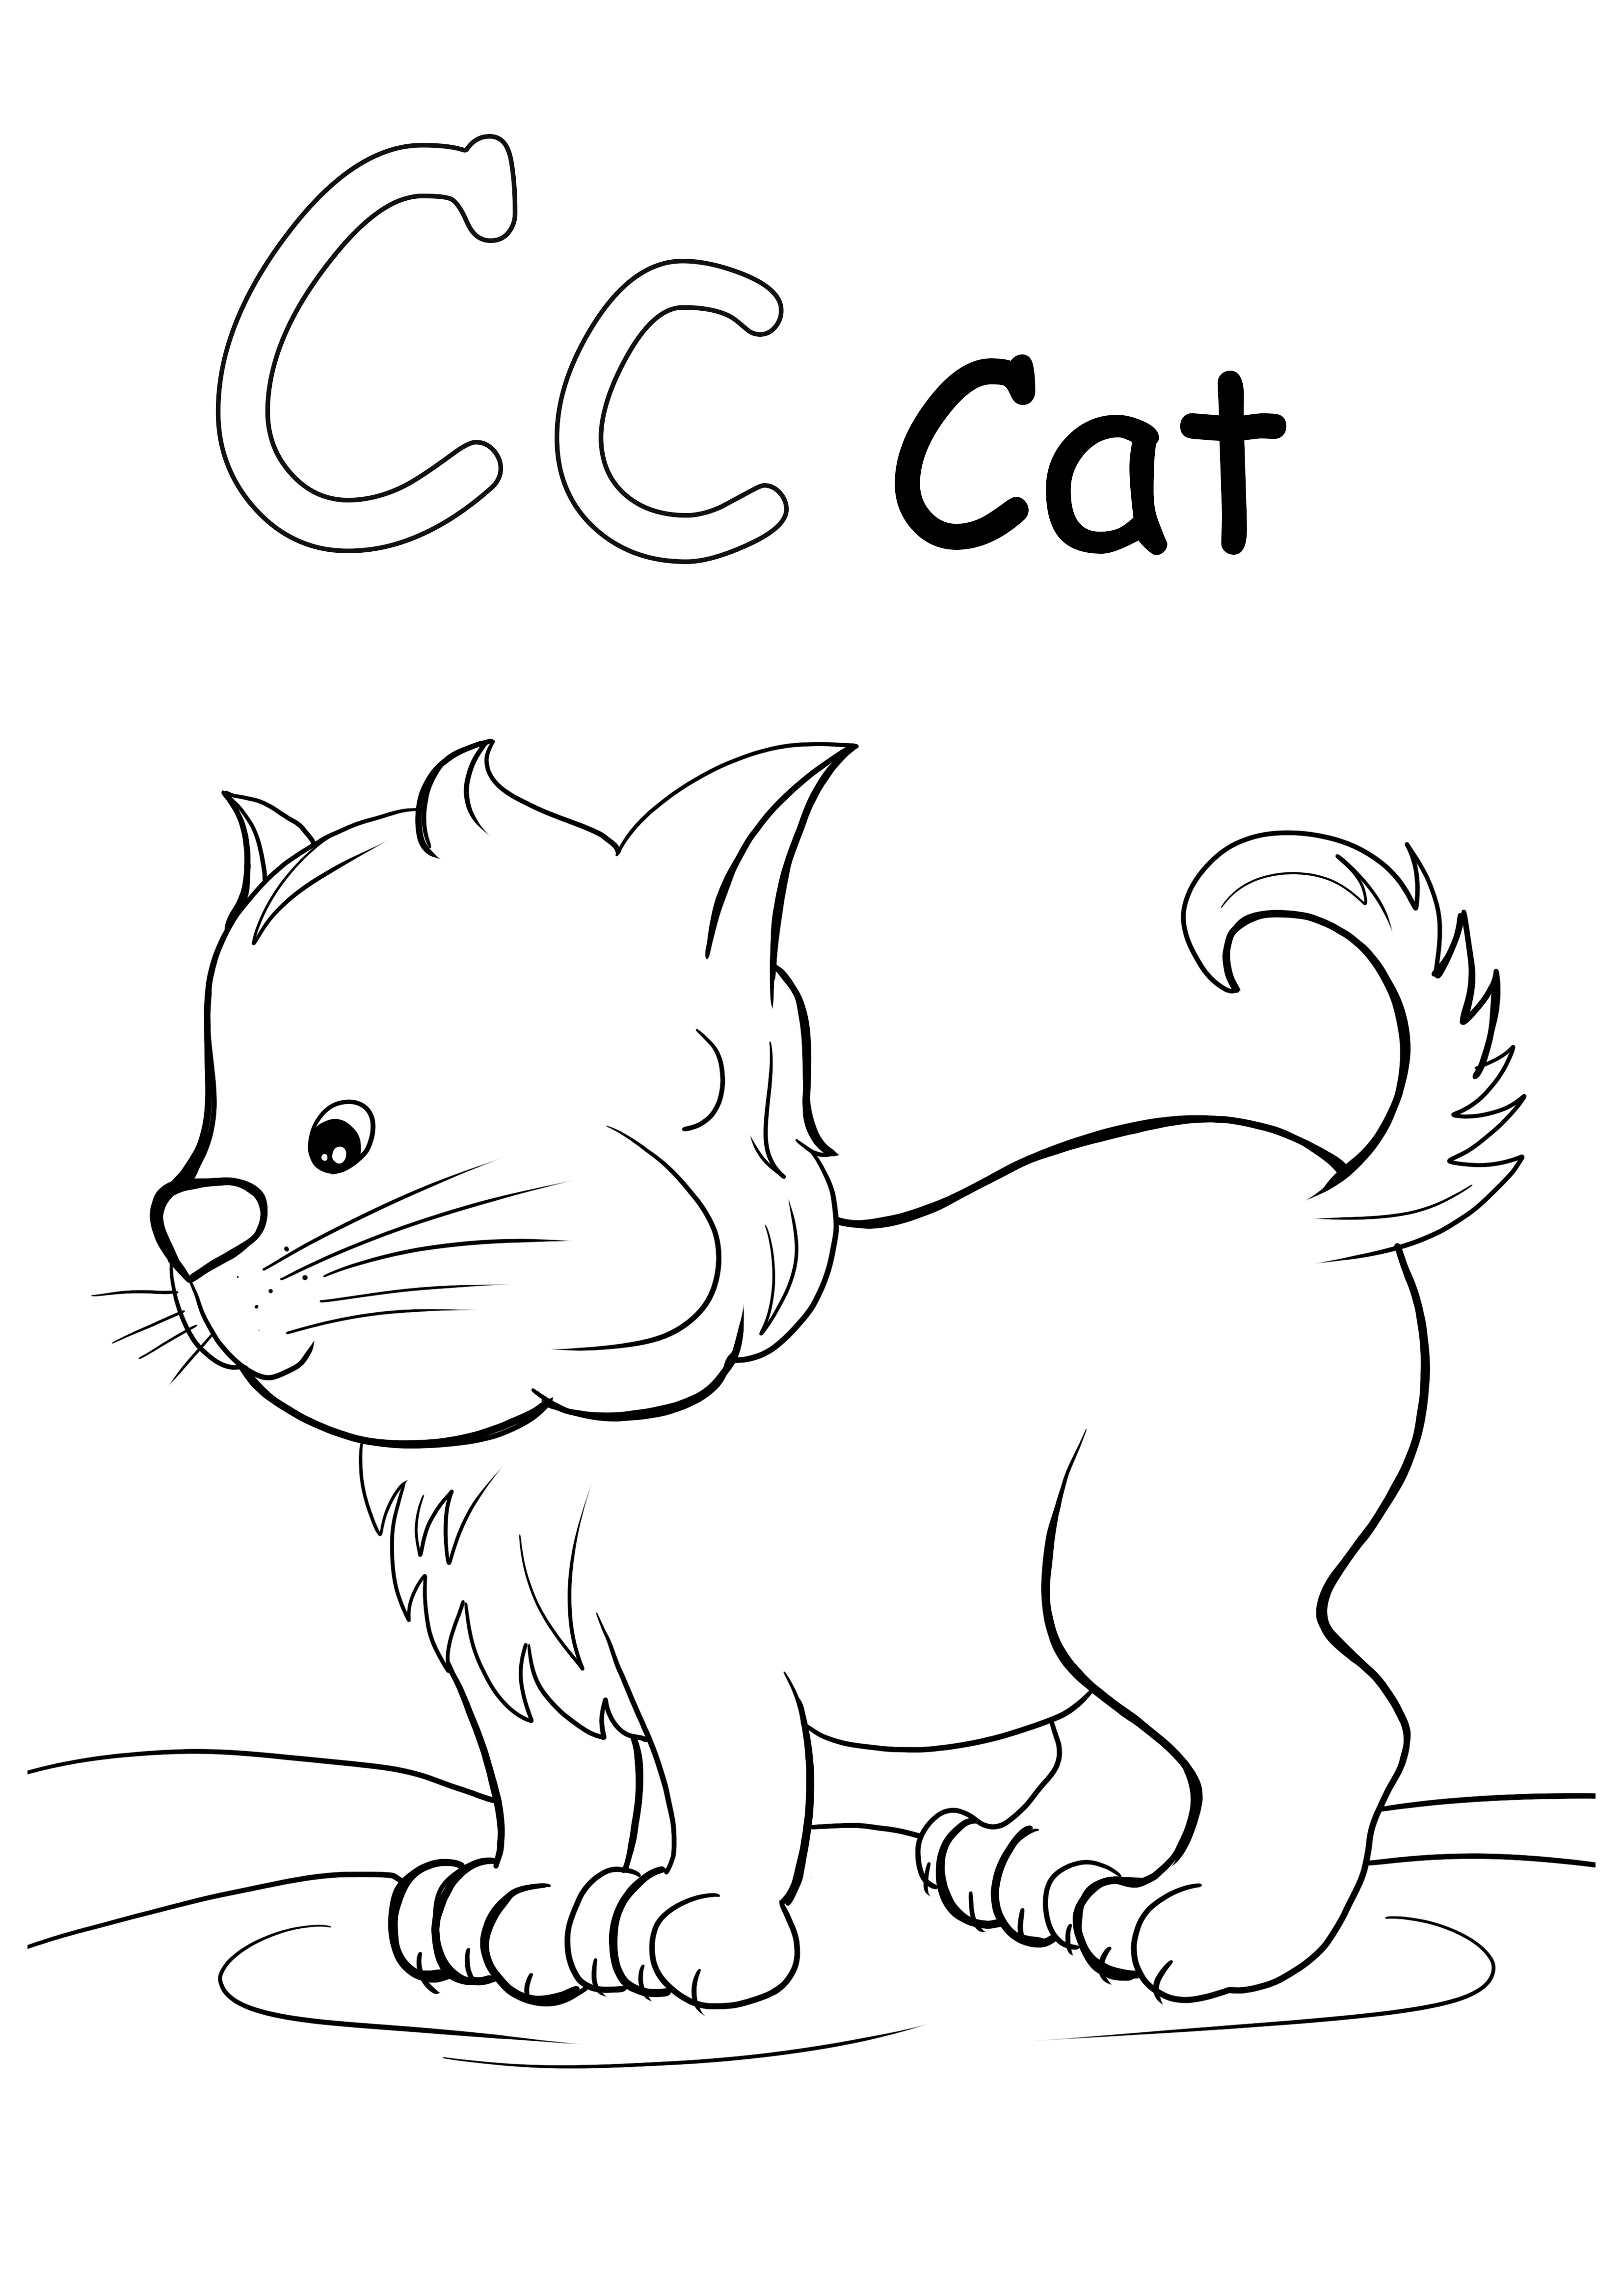 C on kissan väritysarkki ilmaiseen tulostukseen